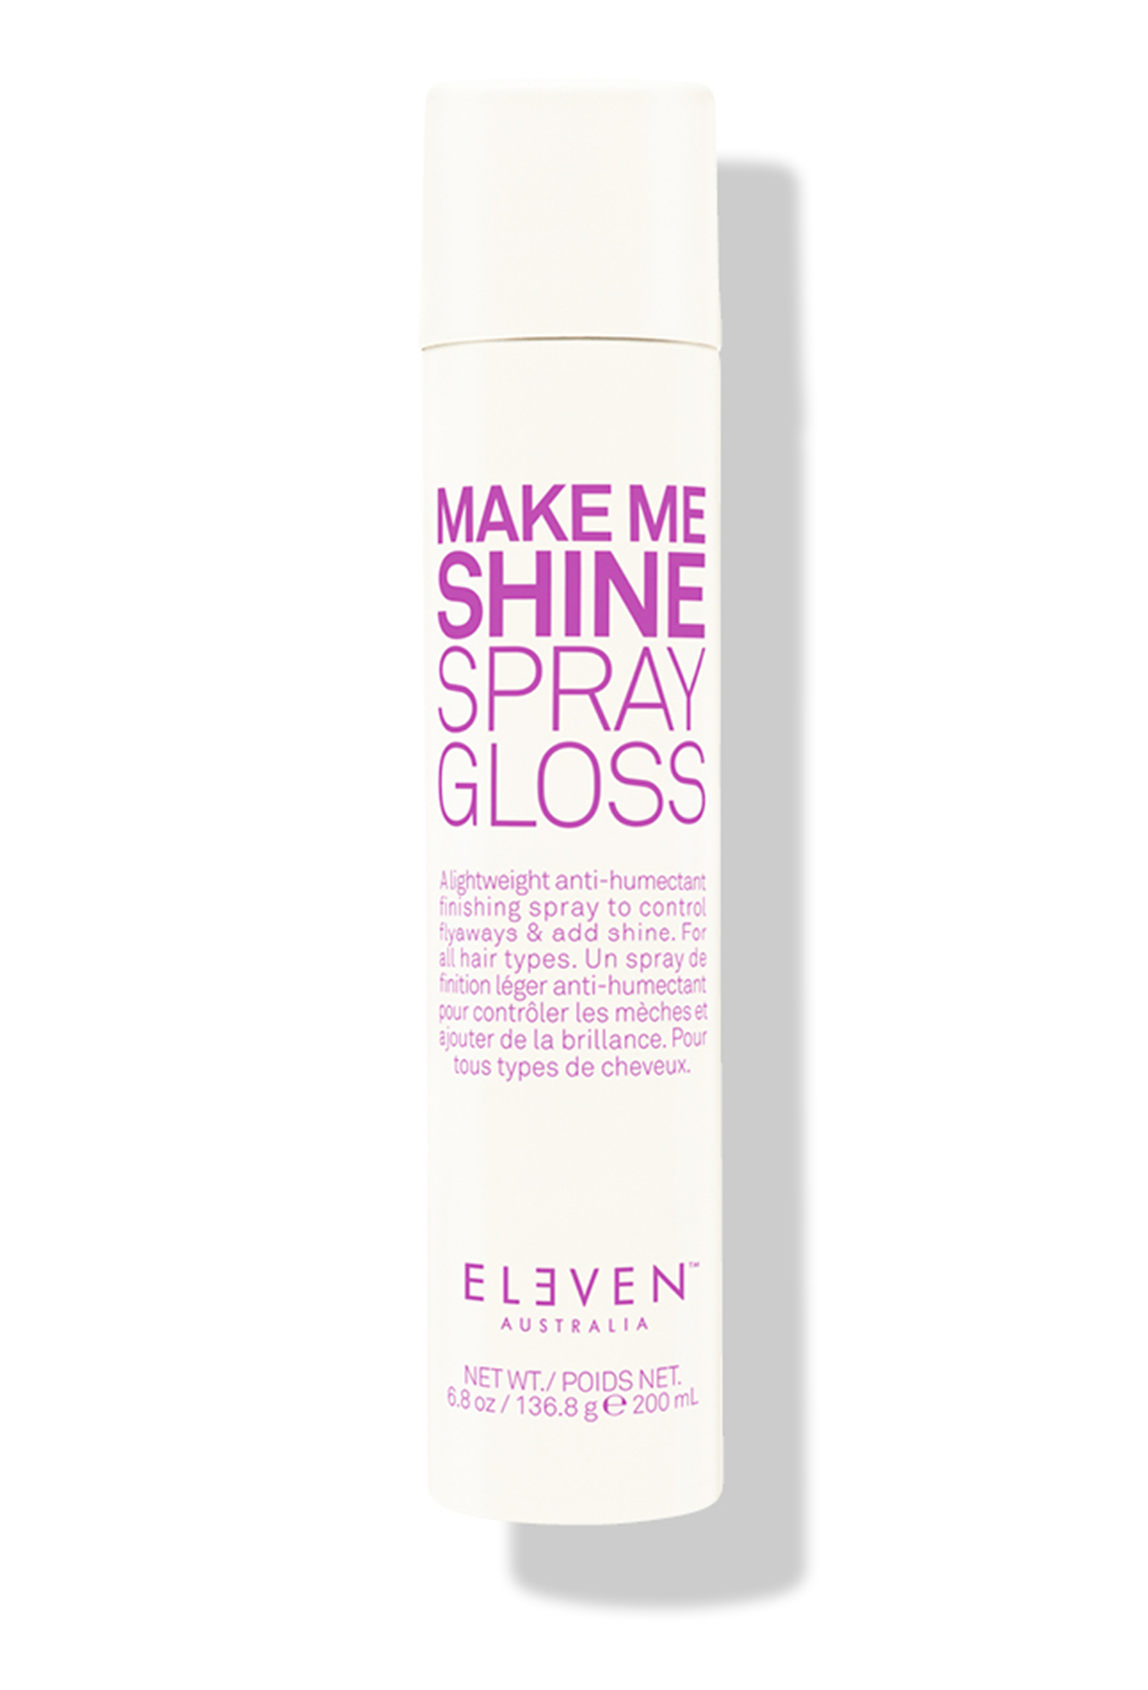 Eleven Australia make me shine spray gloss